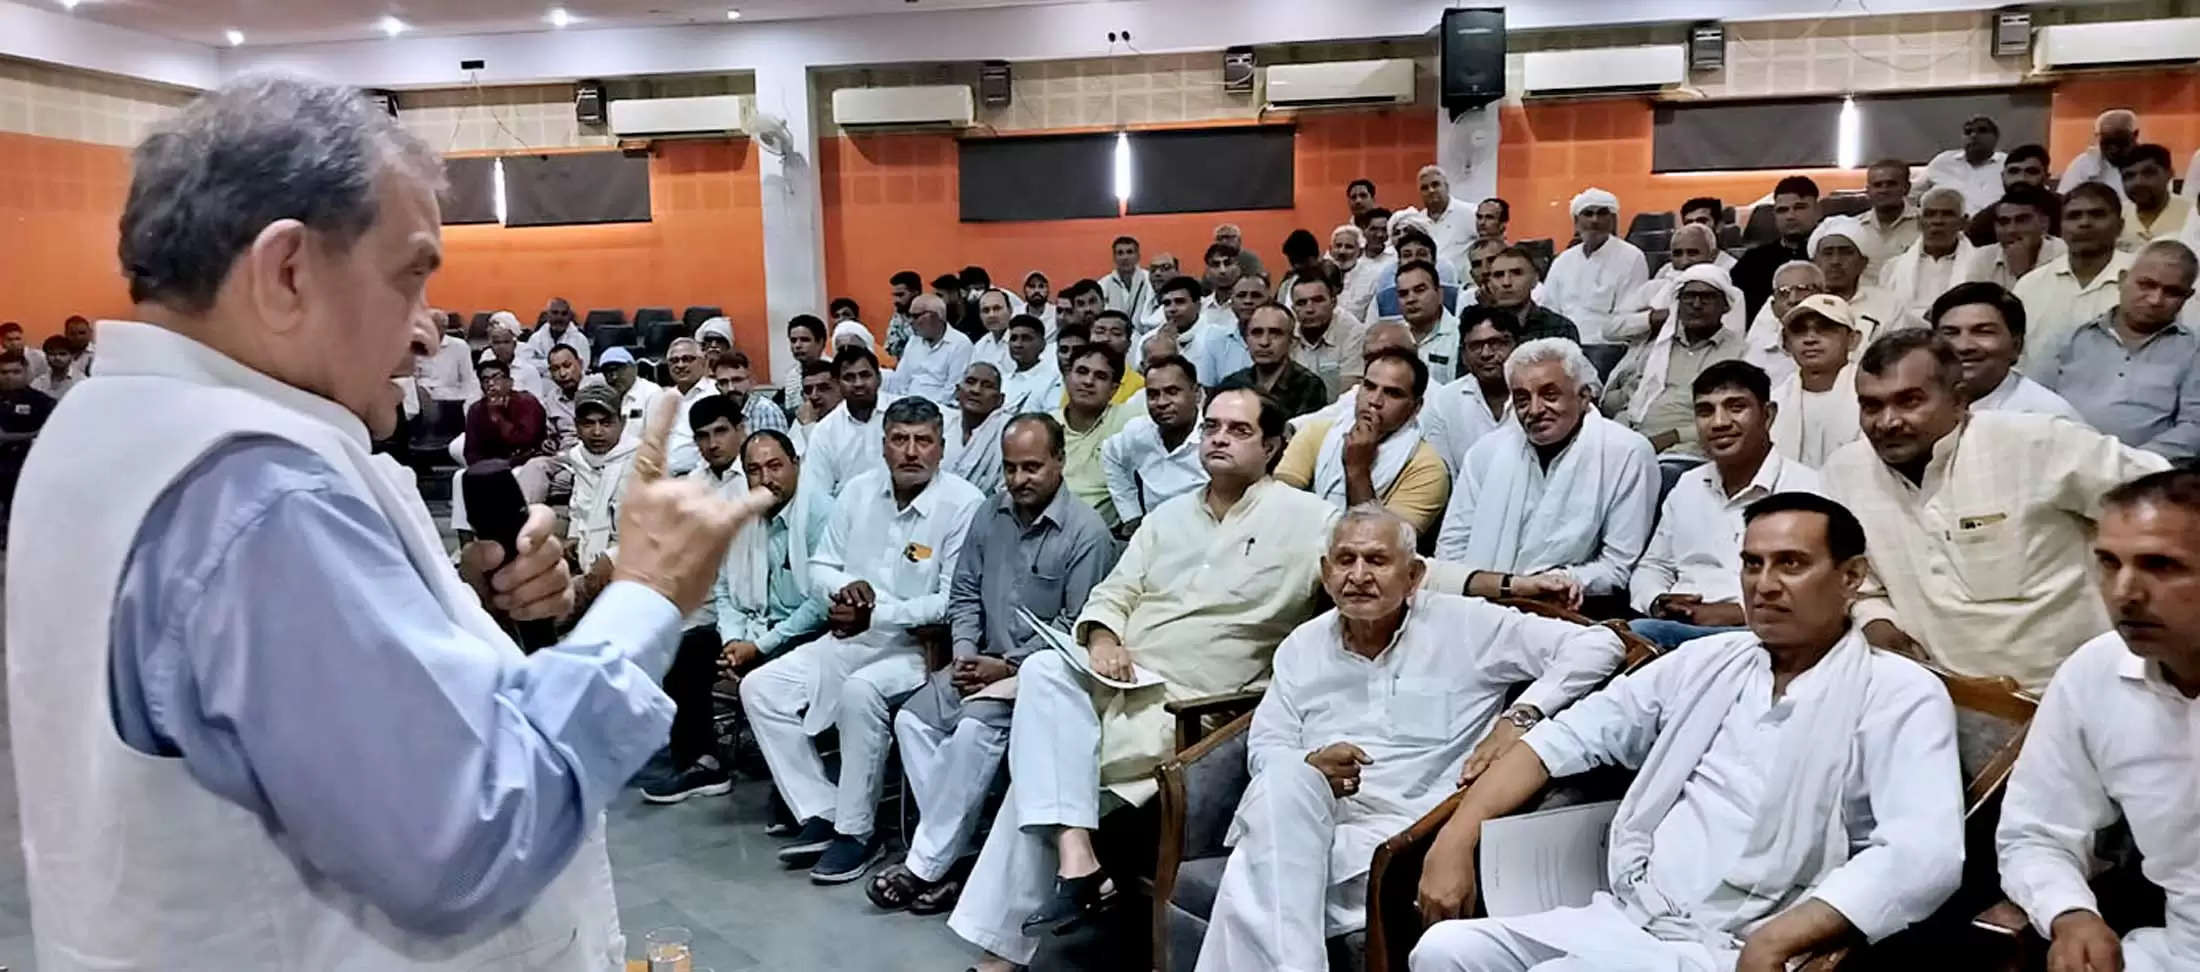 विधानसभा चुनाव में जींद की सभी सीटें जीतेंगी कांग्रेस : बीरेंद्र सिंह